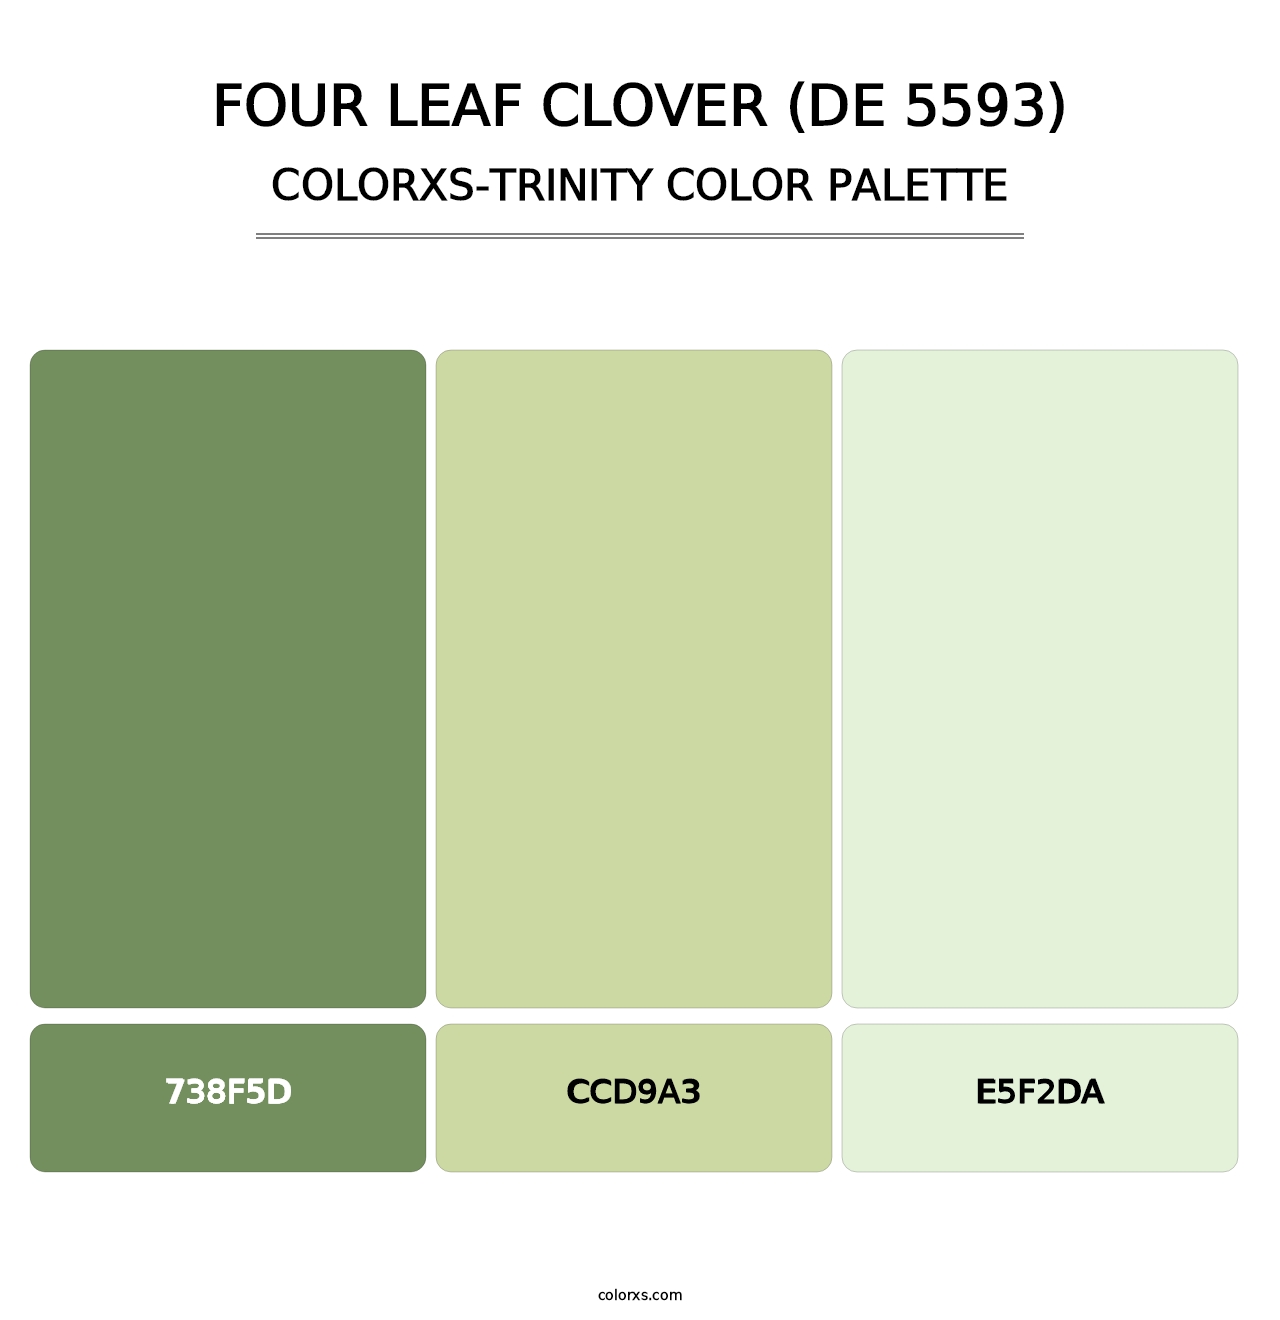 Four Leaf Clover (DE 5593) - Colorxs Trinity Palette